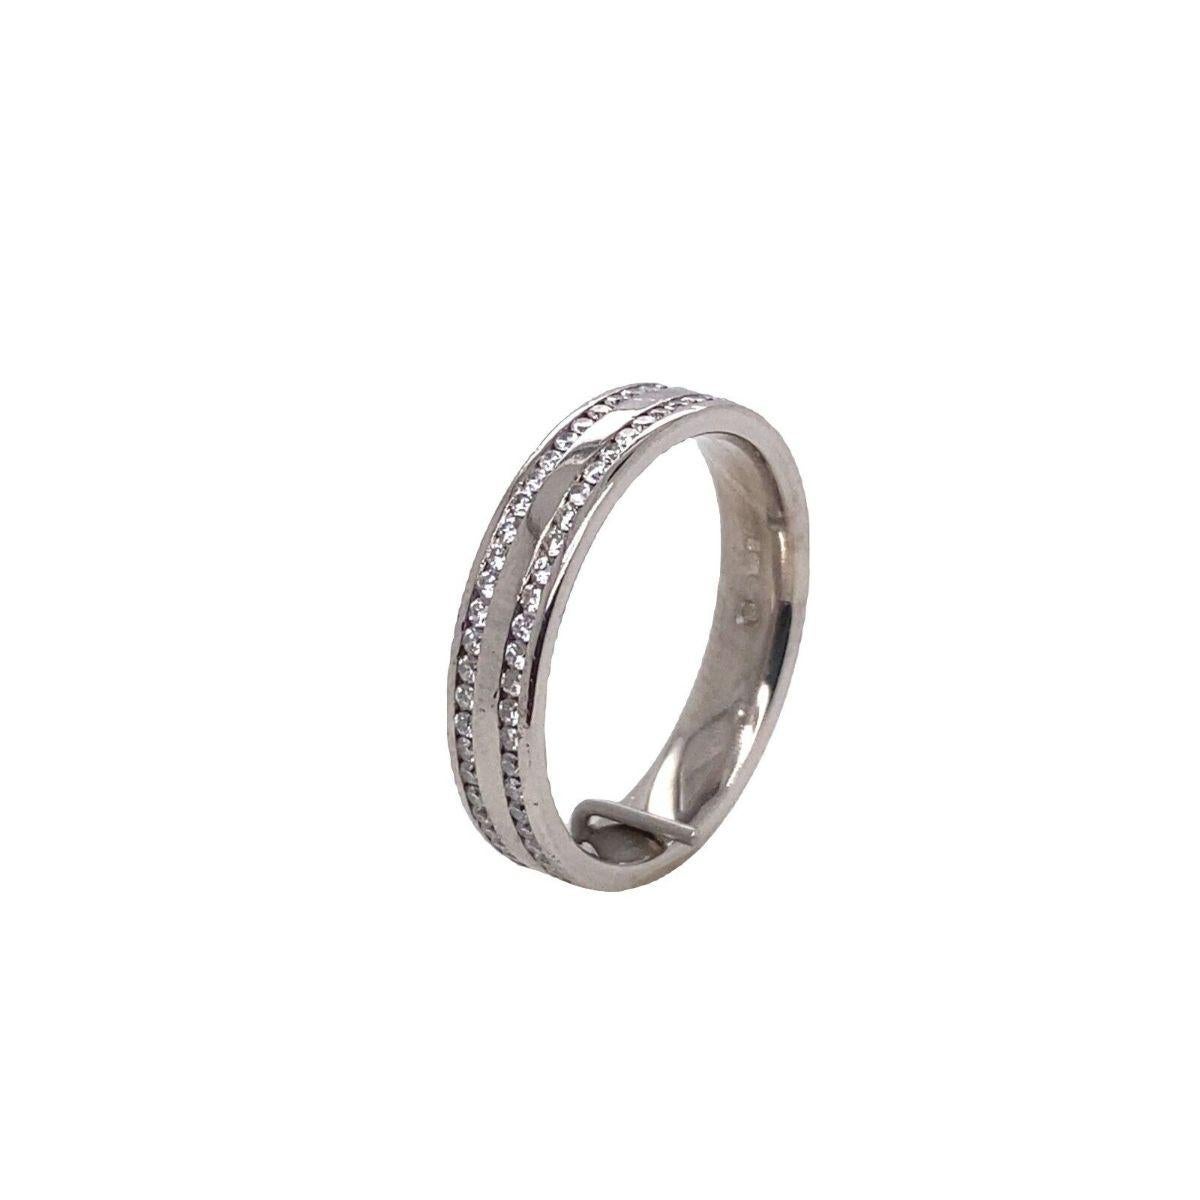 2-reihiges Diamant-Hochzeitsband im Vollbesatz, 0,50ct

Dieser Ehering ist wunderschön und kann als Ewigkeitsring oder Ehering getragen werden. Er verfügt über 2 Reihen von 0,50ct Diamanten, die in einen 18ct Weißgold-Schaft eingefasst sind. Die